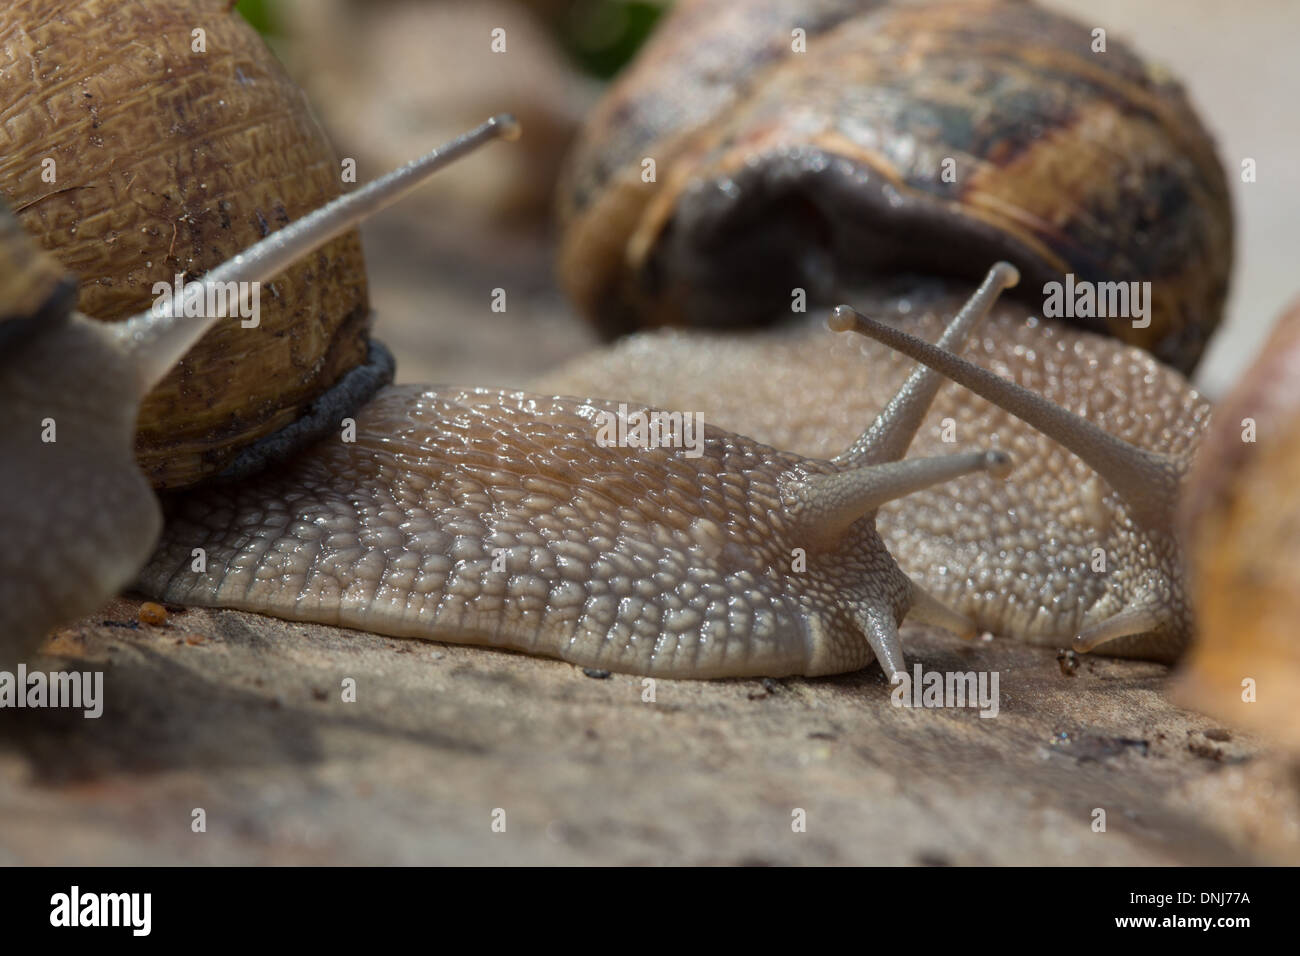 Escargots GROS GRIS (Helix aspersa maxima), L'ESCARGOTIERE ferme aux escargots, Chaumont, ORNE (61), FRANCE Banque D'Images